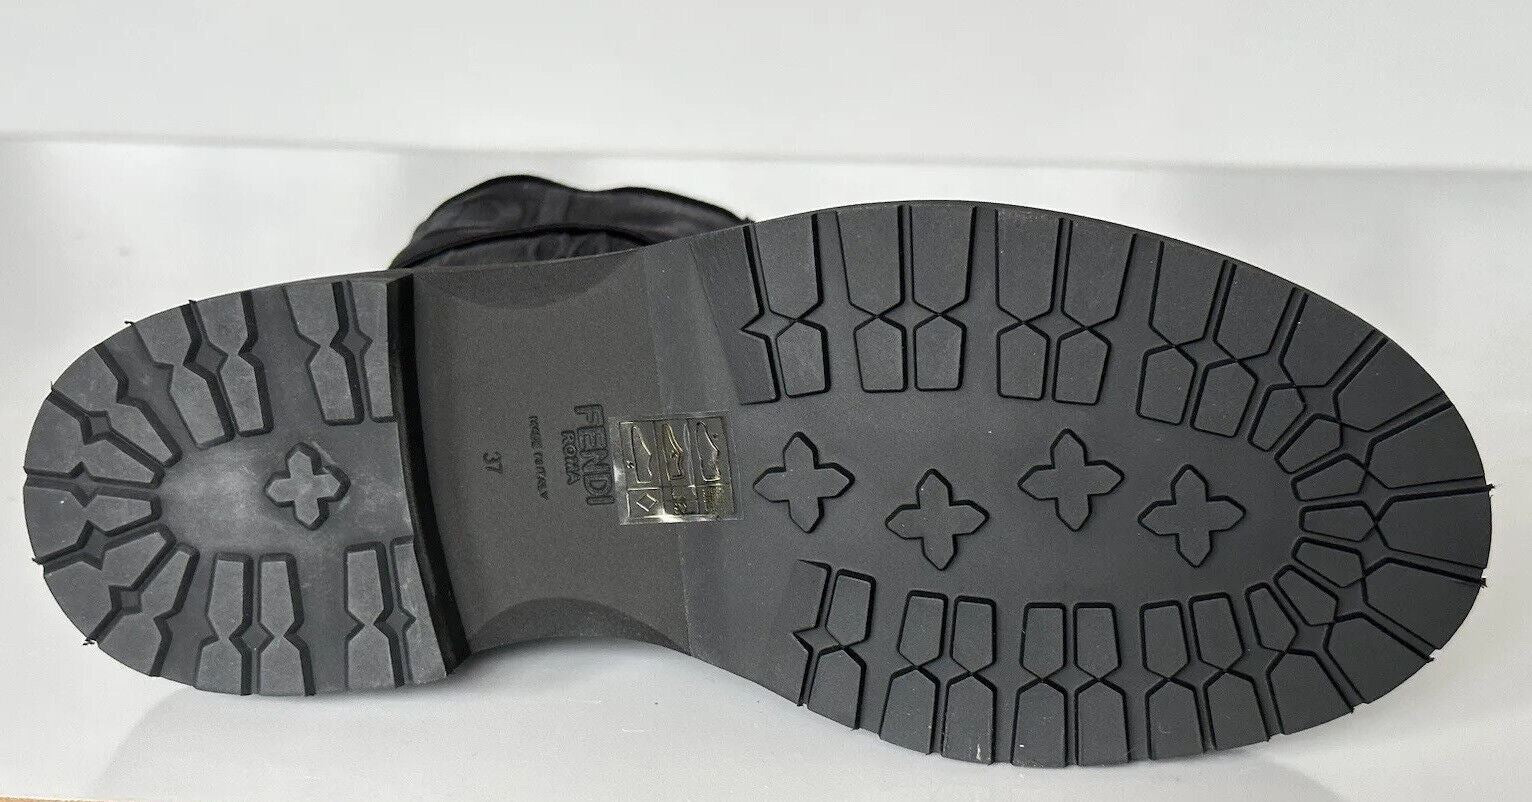 Черные байкерские парусиновые ботинки Fendi до щиколотки стоимостью 1100 долларов США 7 США (37 евро), Италия 